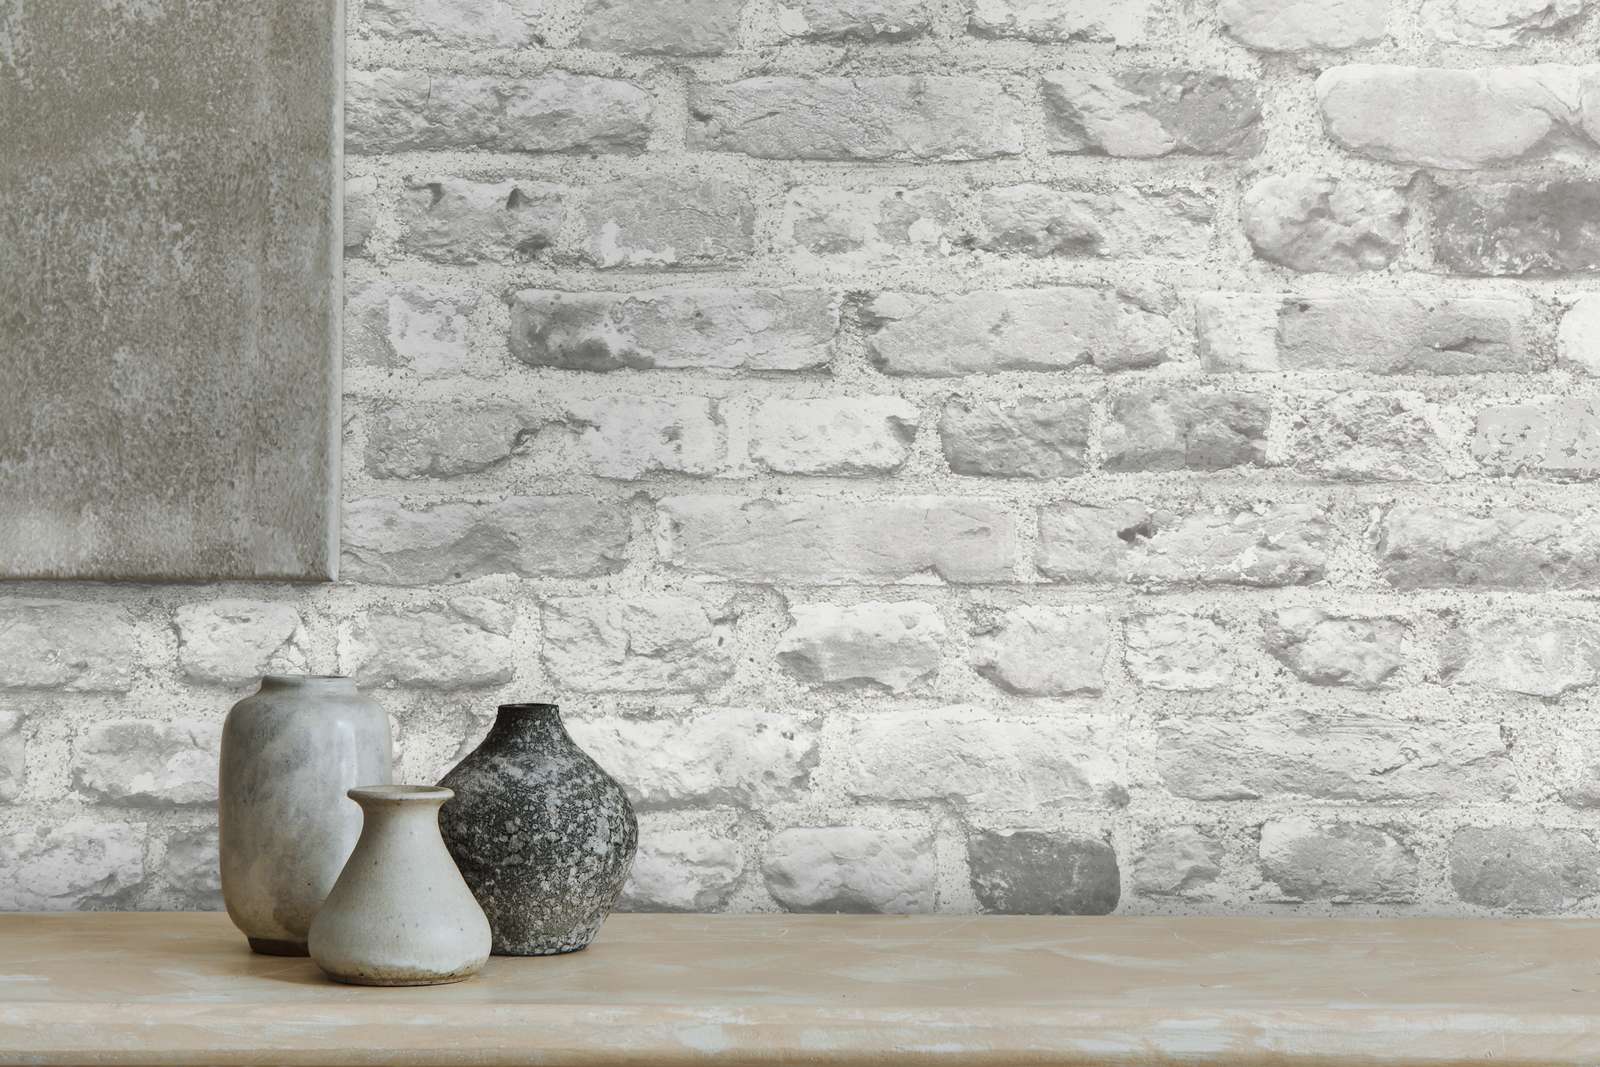             Papier peint imitation pierre avec maçonnerie 3D - gris, blanc
        